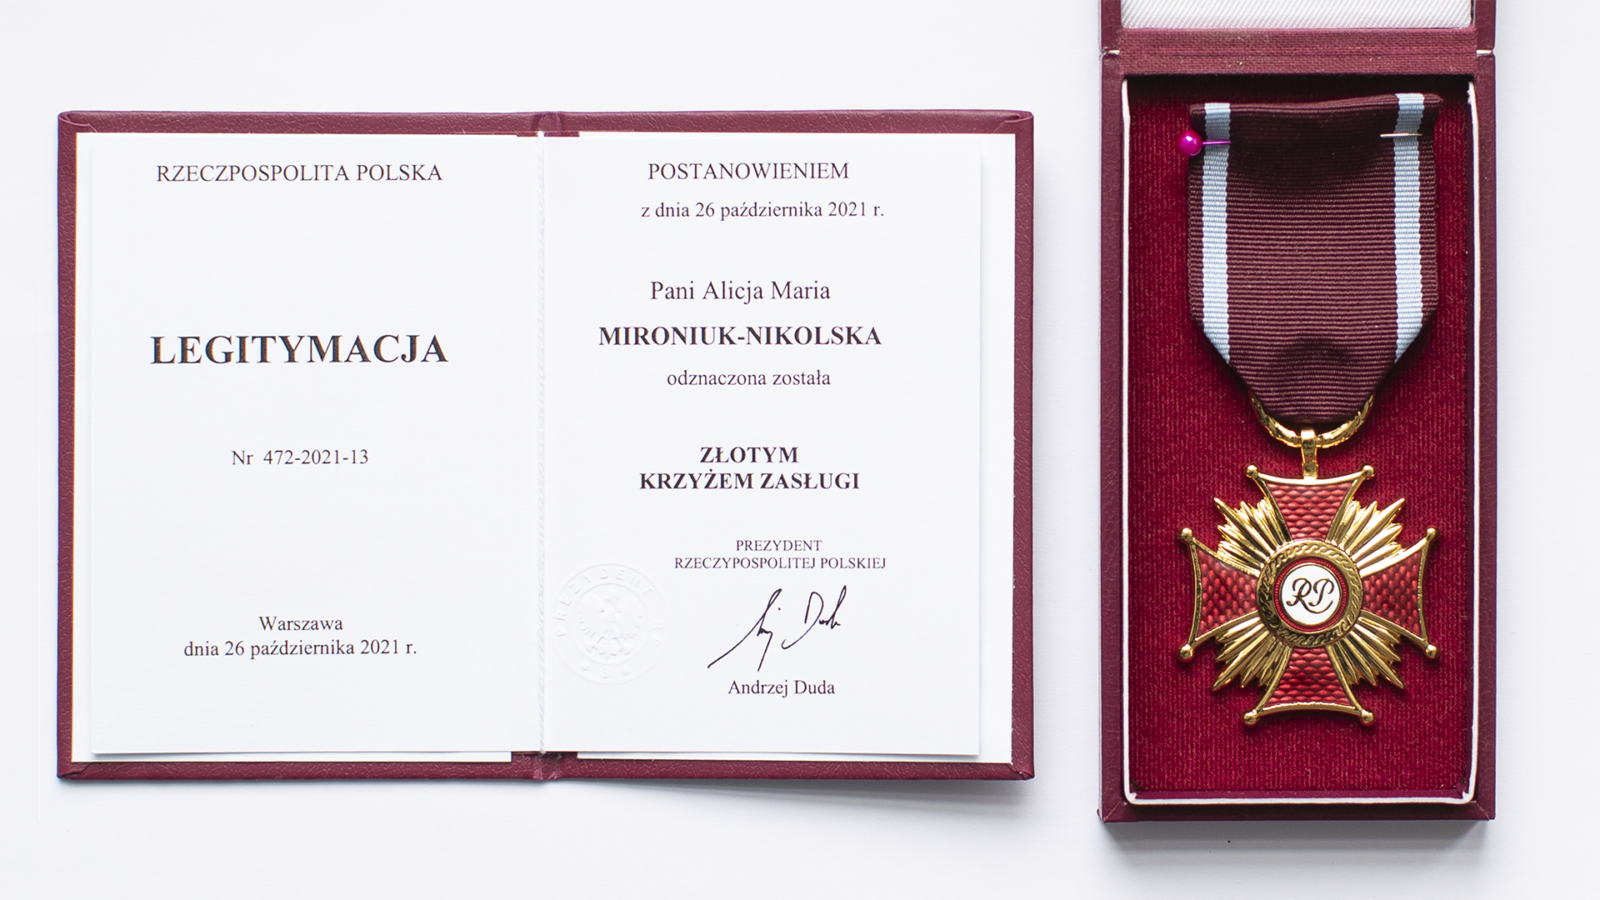 Zdjęcie Złotego Krzyża Zasługi w pudełku oraz legitymacji wręczonej przez Prezydenta Rzeczypospolitej Polski Andrzeja Dudy